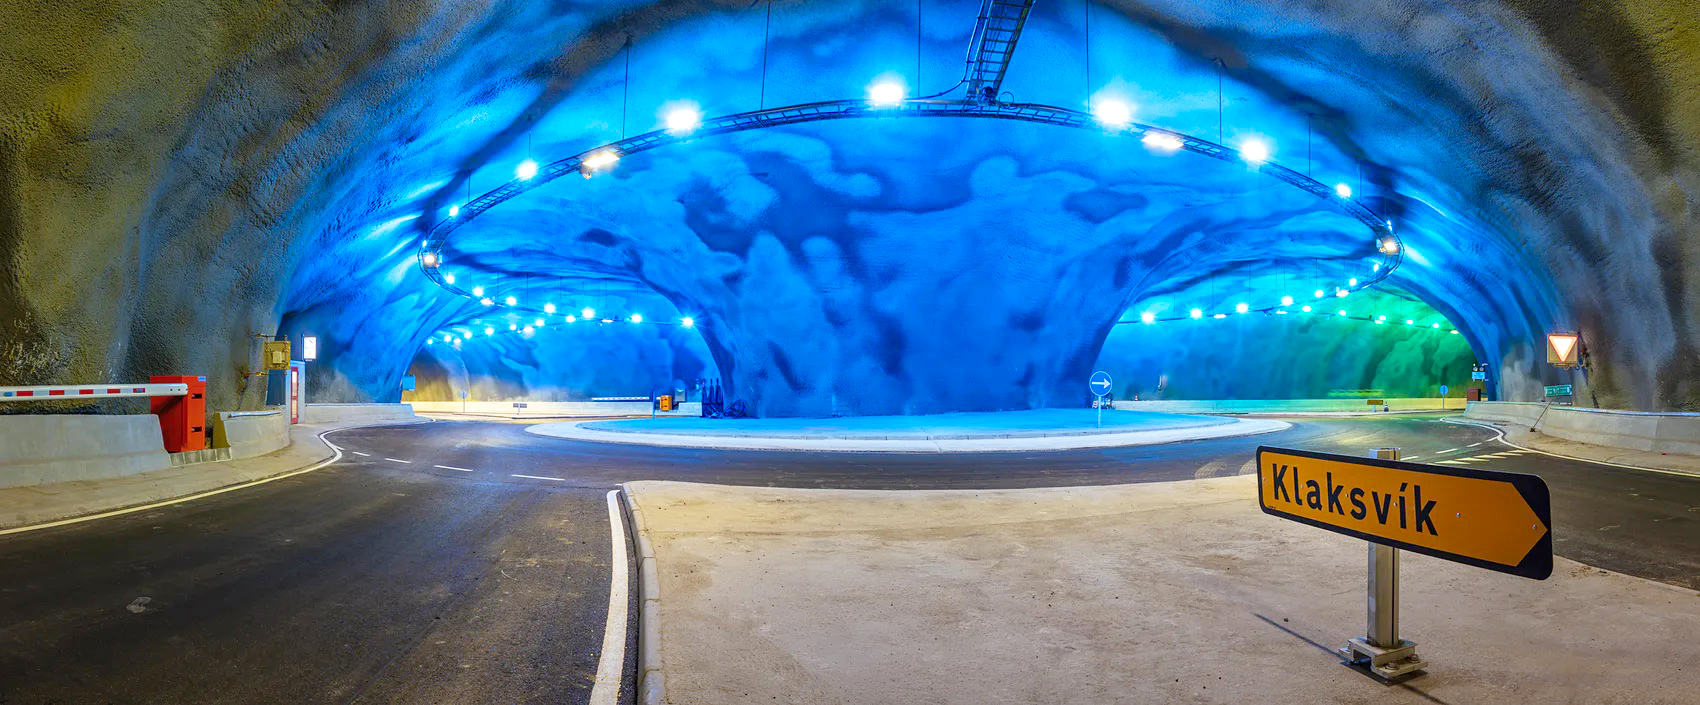 Este sábado se abrirá un túnel con la primera glorieta submarina en las Islas Feroe